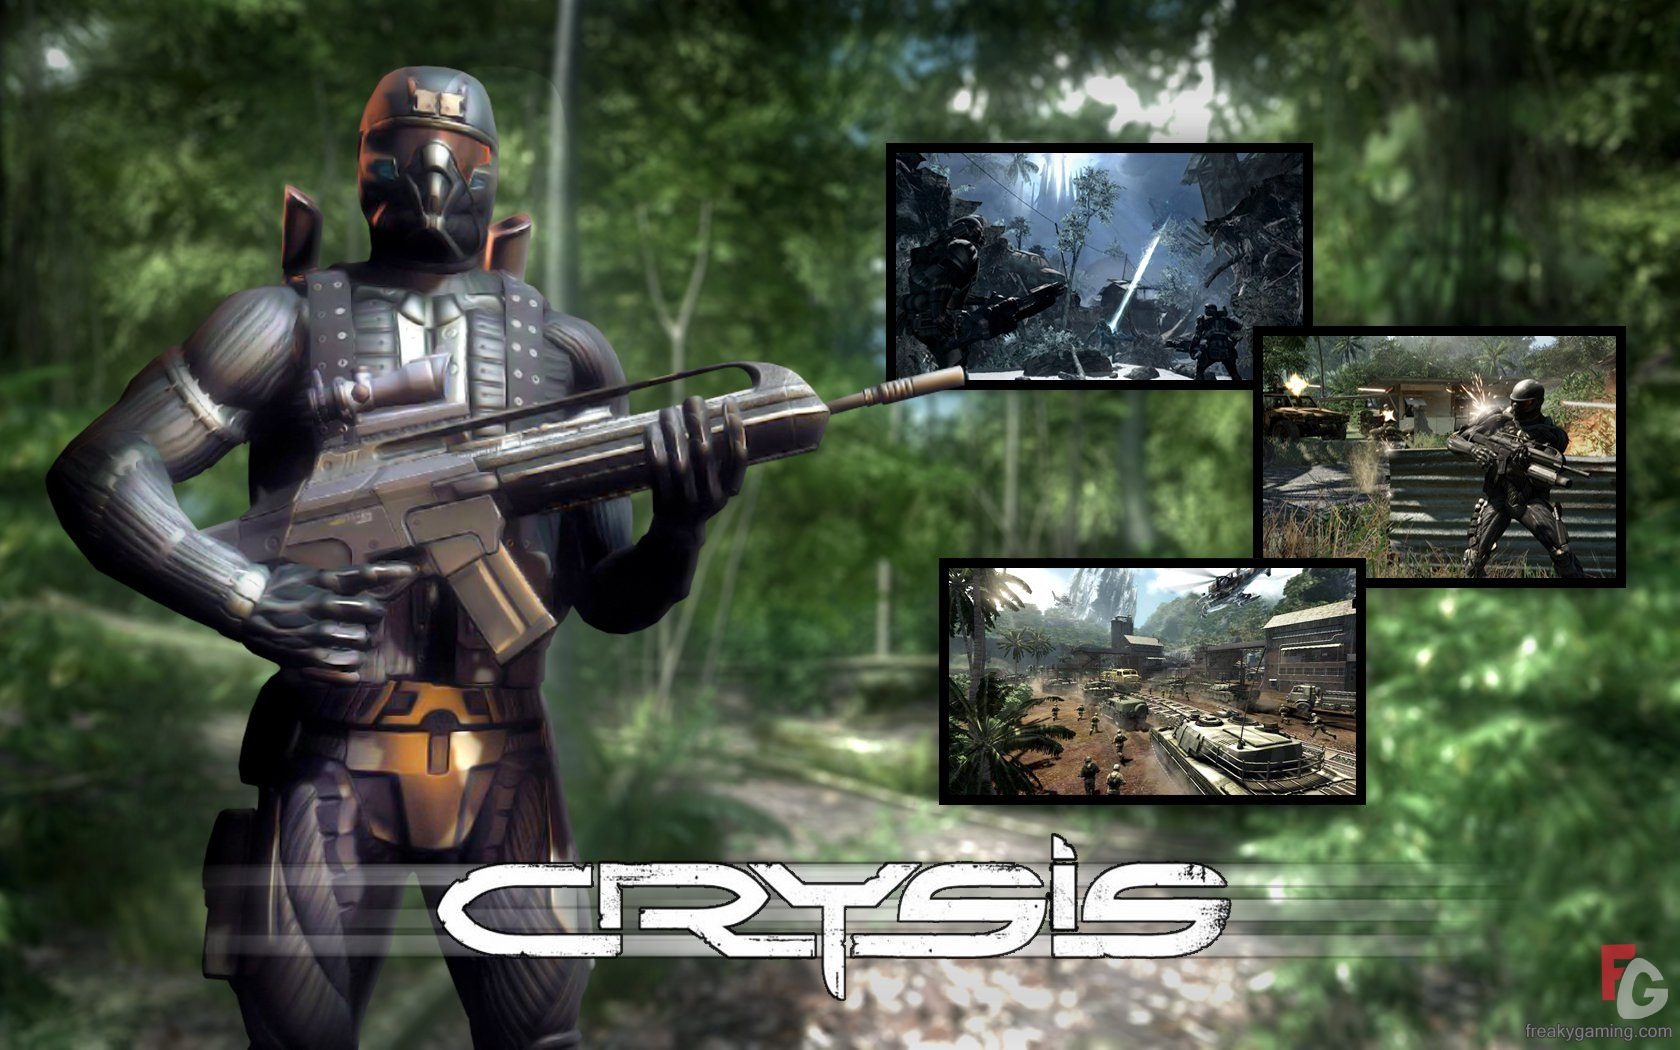  Crysisの壁紙(3) #16 - 1680x1050